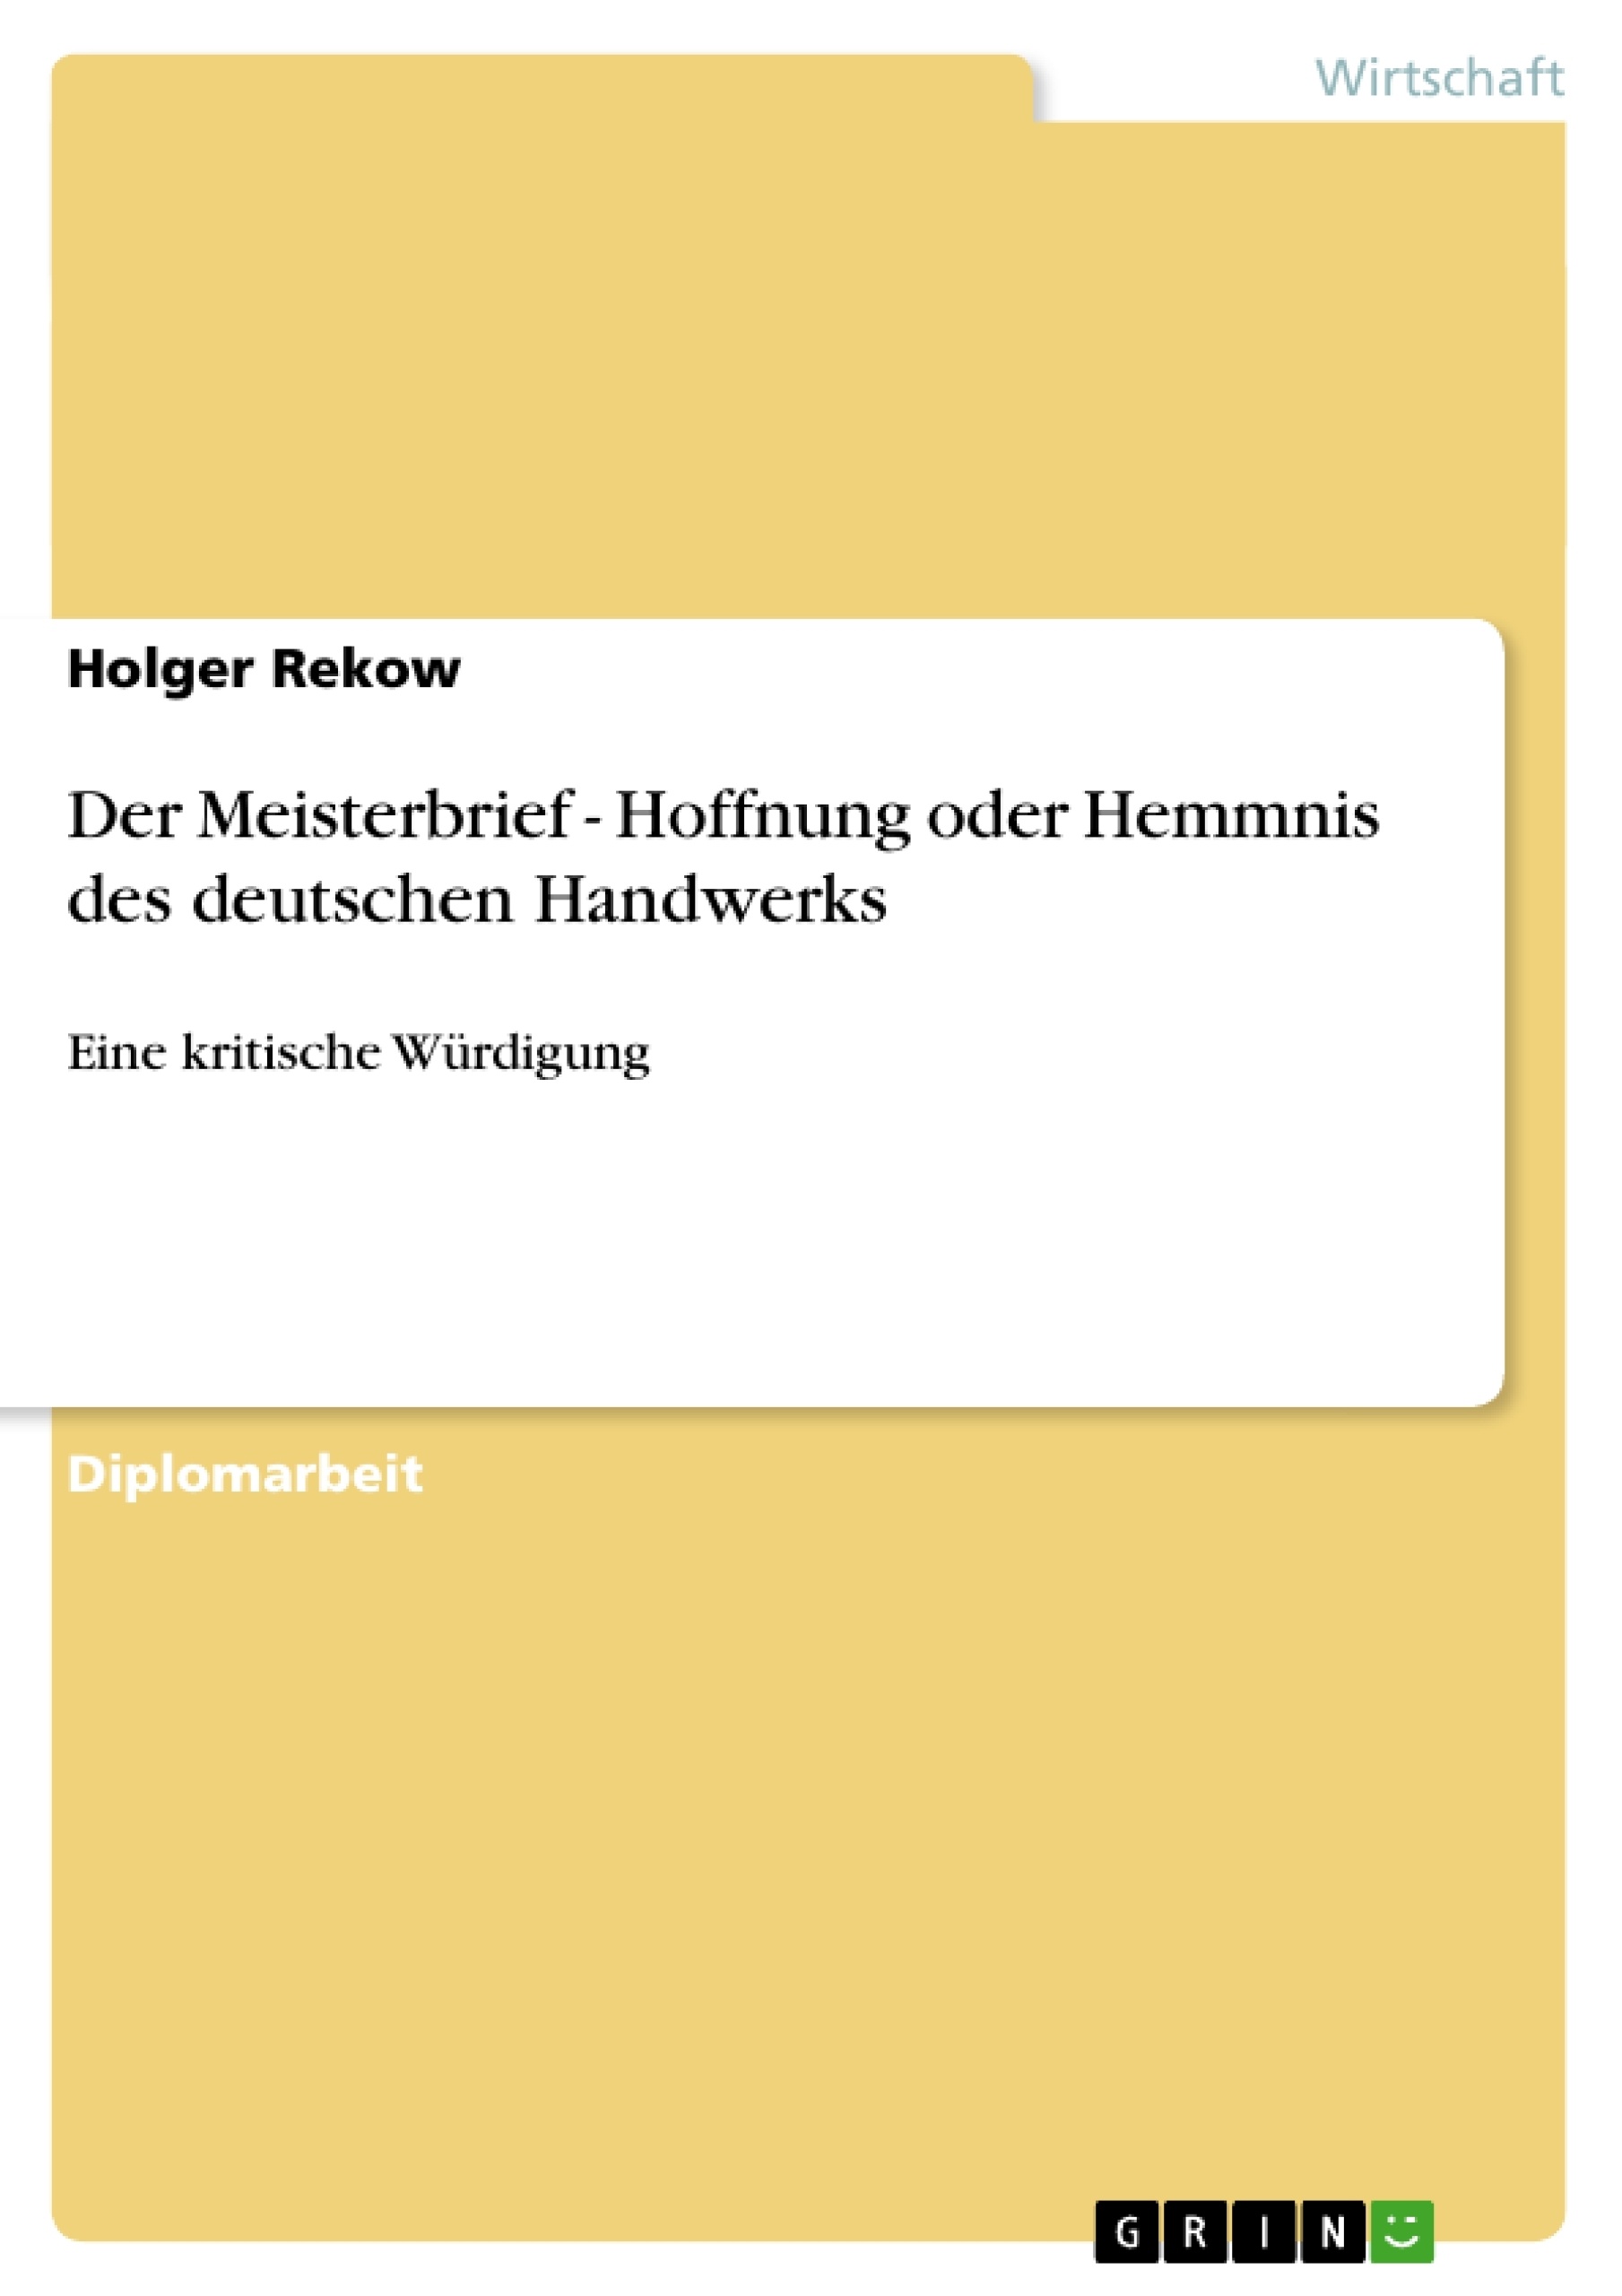 Título: Der Meisterbrief - Hoffnung oder Hemmnis des deutschen Handwerks